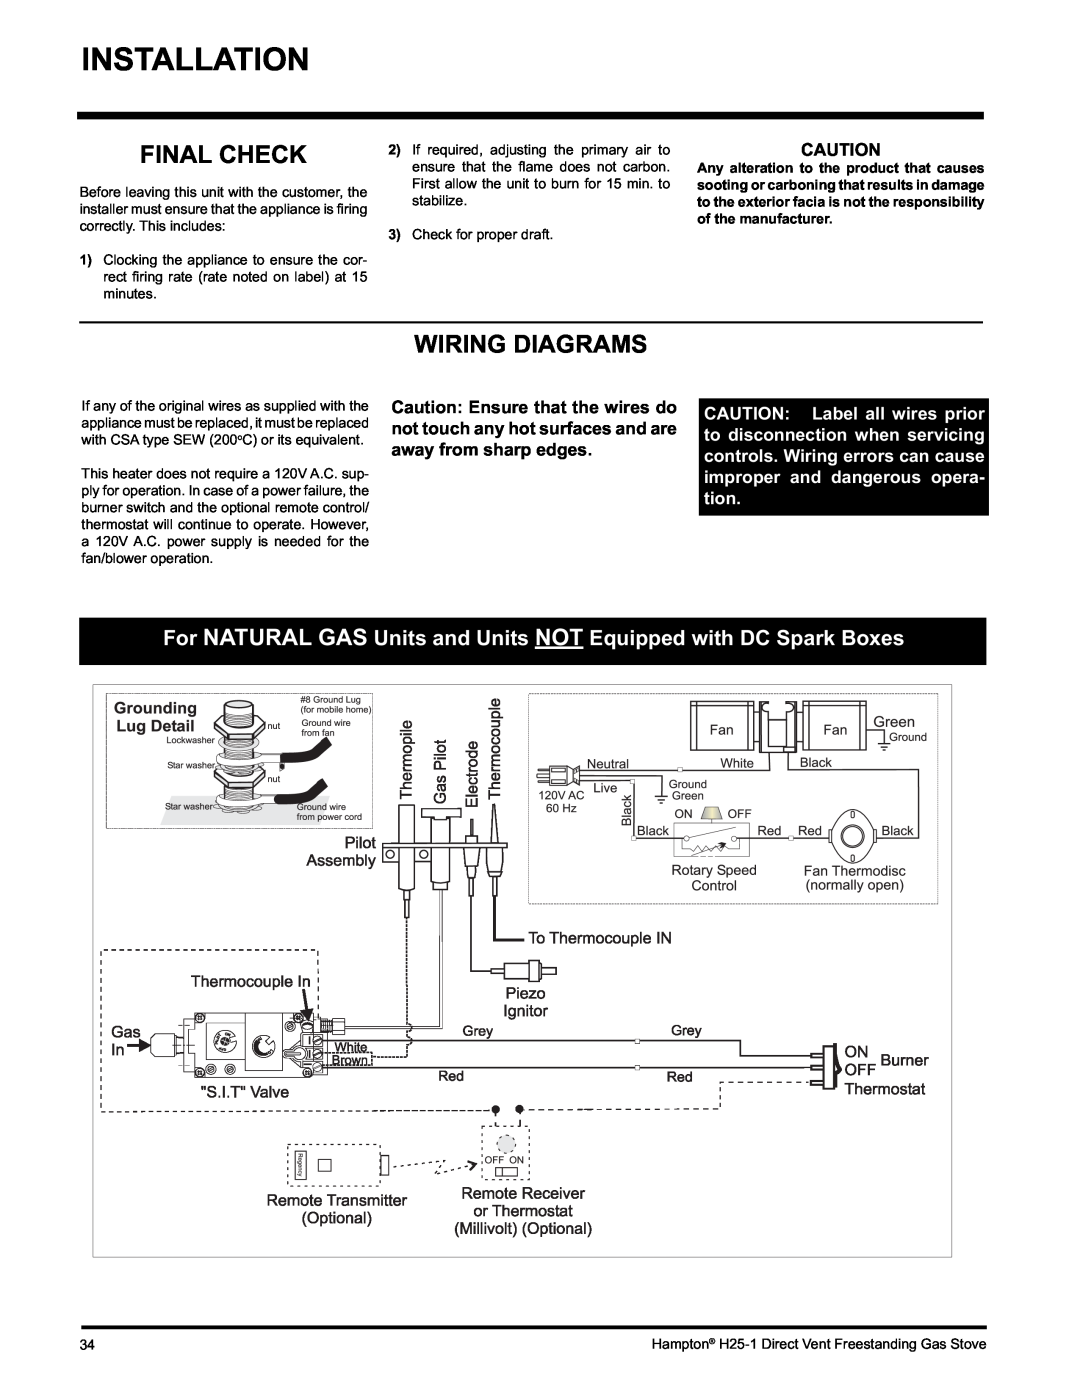 Hampton Direct H25-NG1, H25-LP1 installation manual Final Check, Wiring Diagrams, Installation 